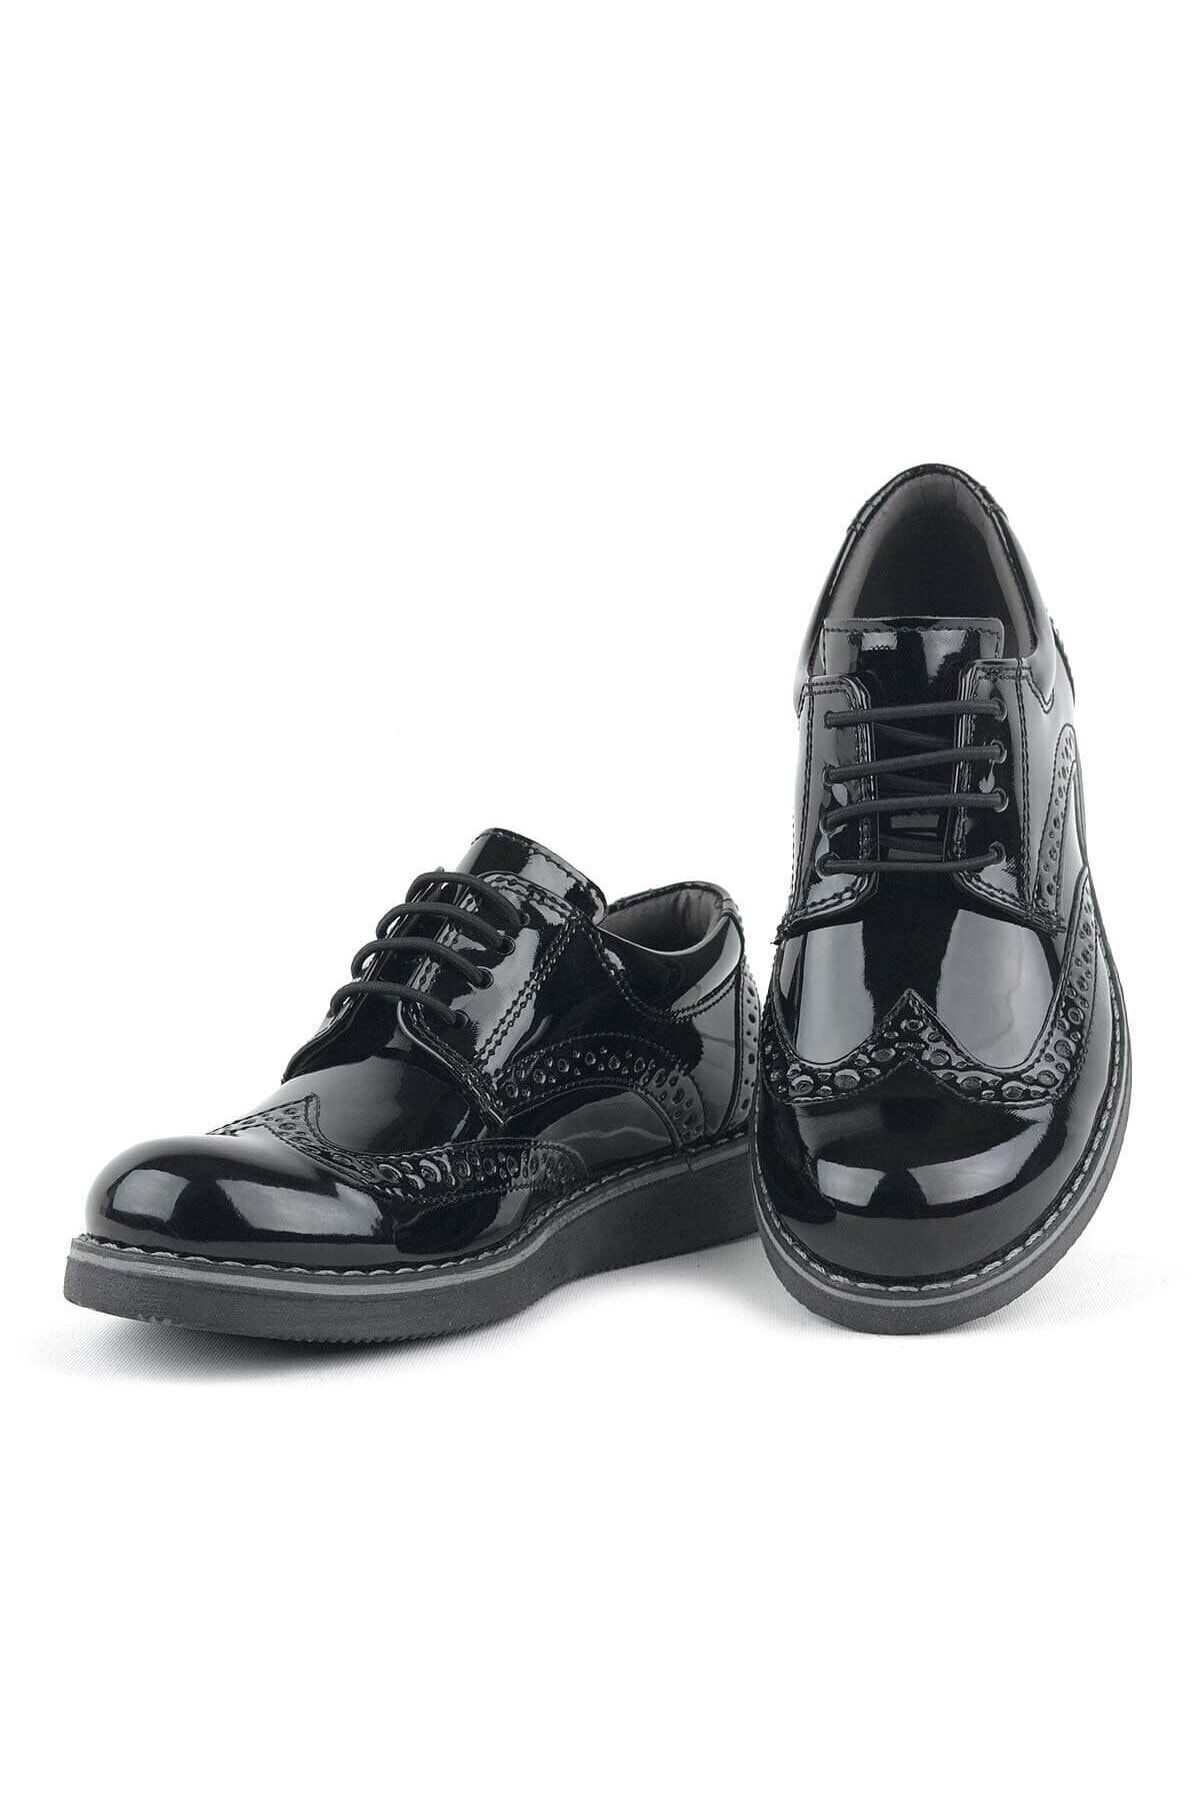 Papuccum Ortopedi Unisex Çocuk Siyah Oxford Bağcıklı Ayakkabı